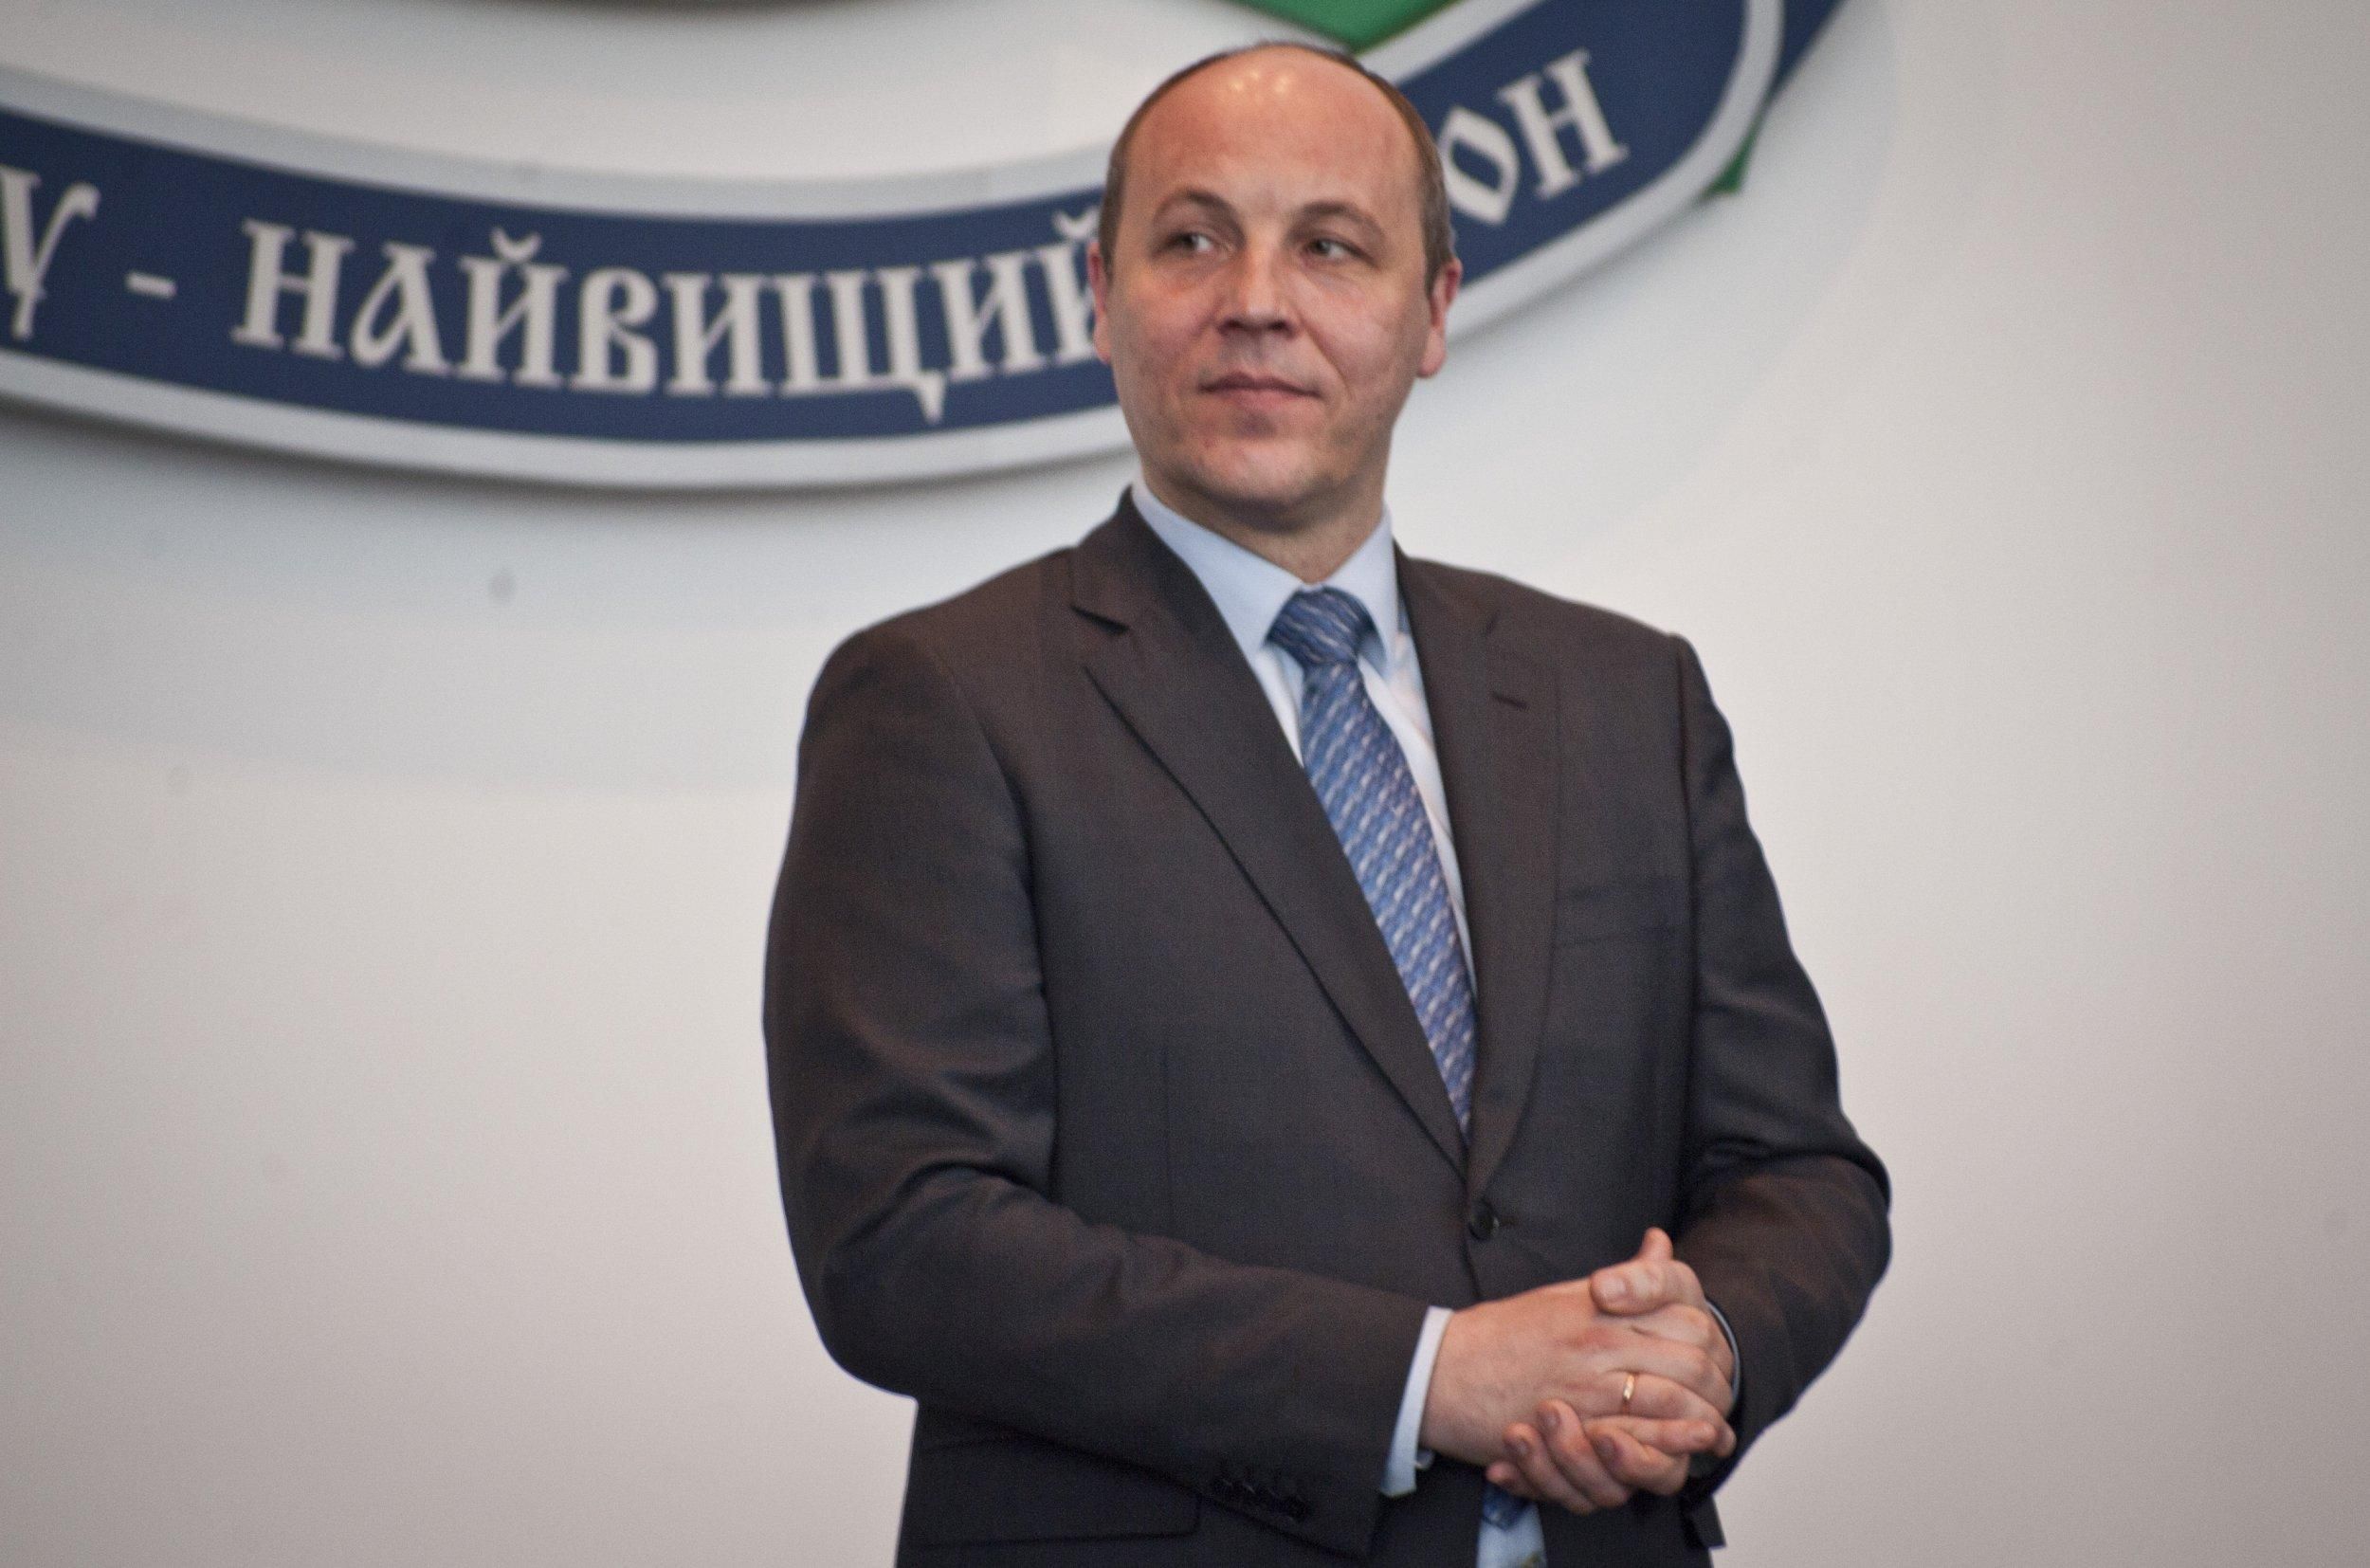 ГБР открыло дело против Парубия из-за трагедии 2 мая в Одессе: детали